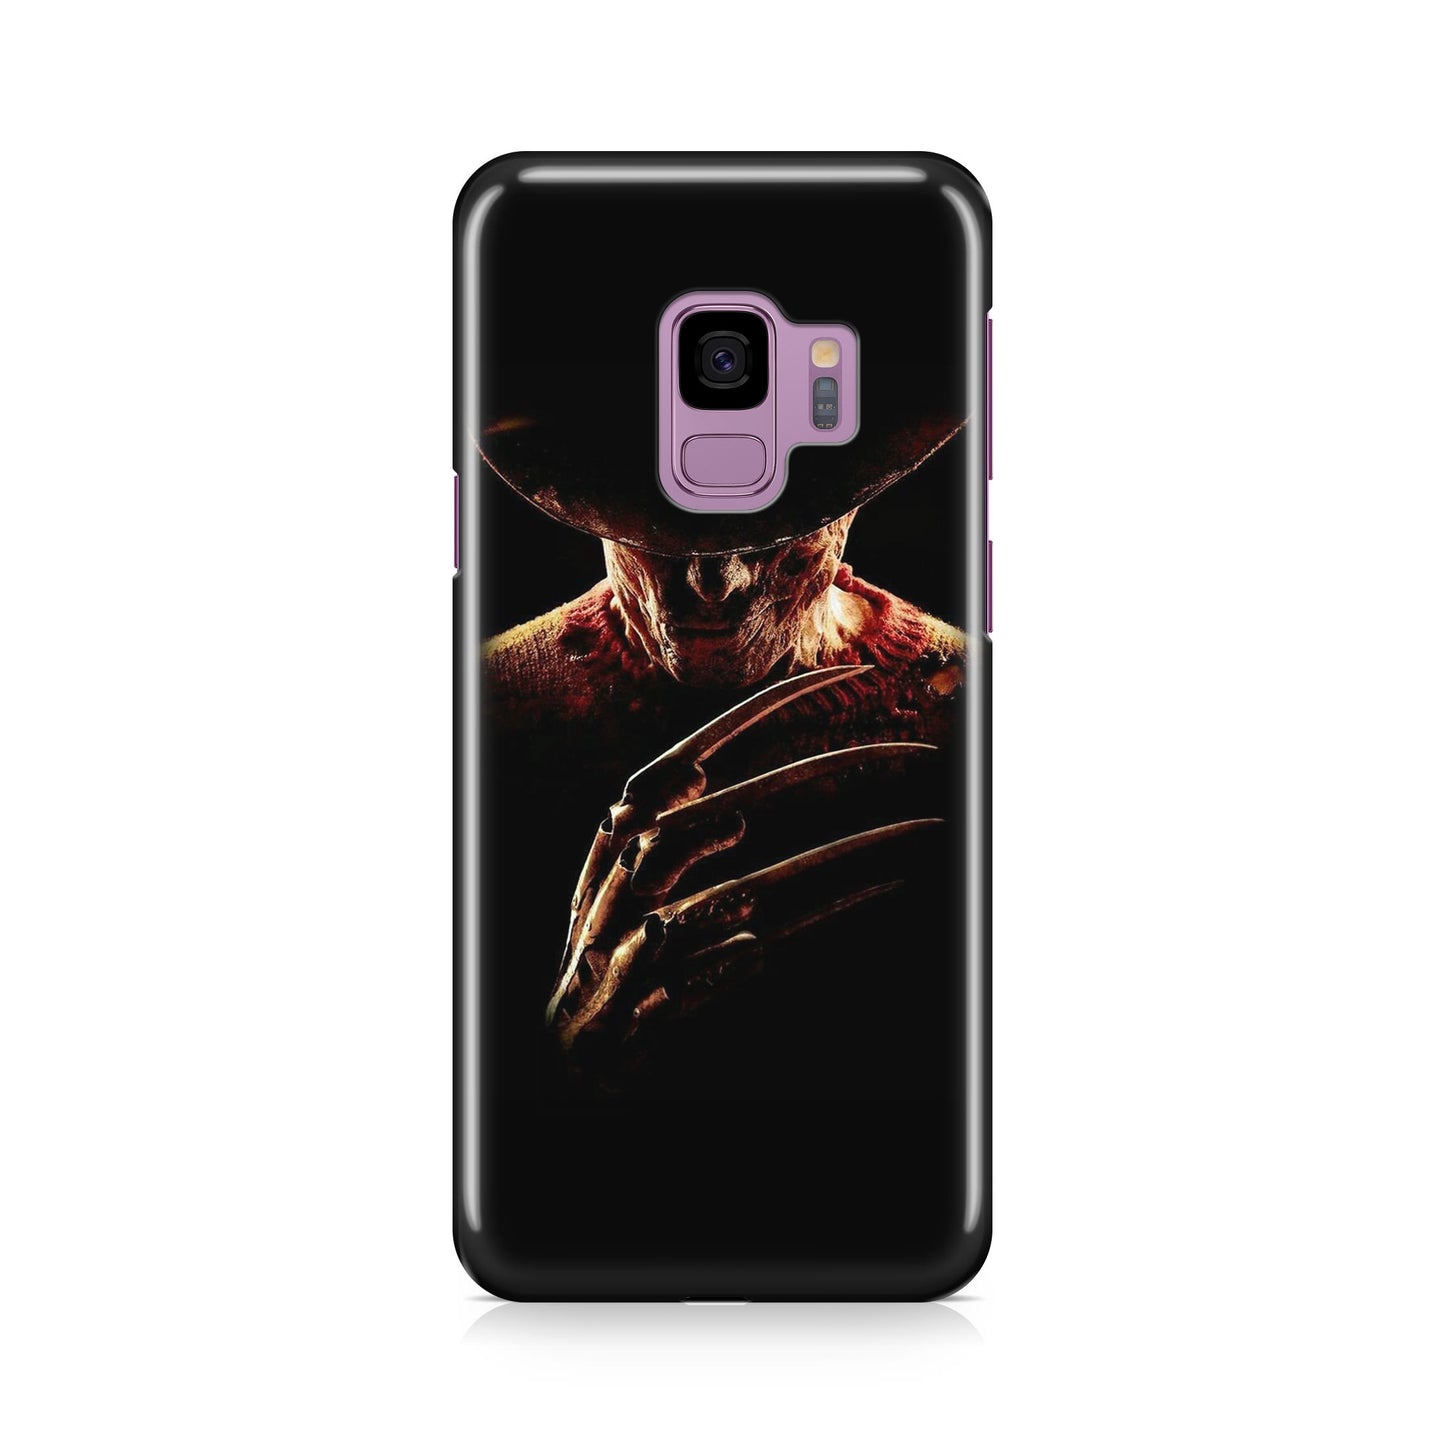 Freddy Krueger Galaxy S9 Case